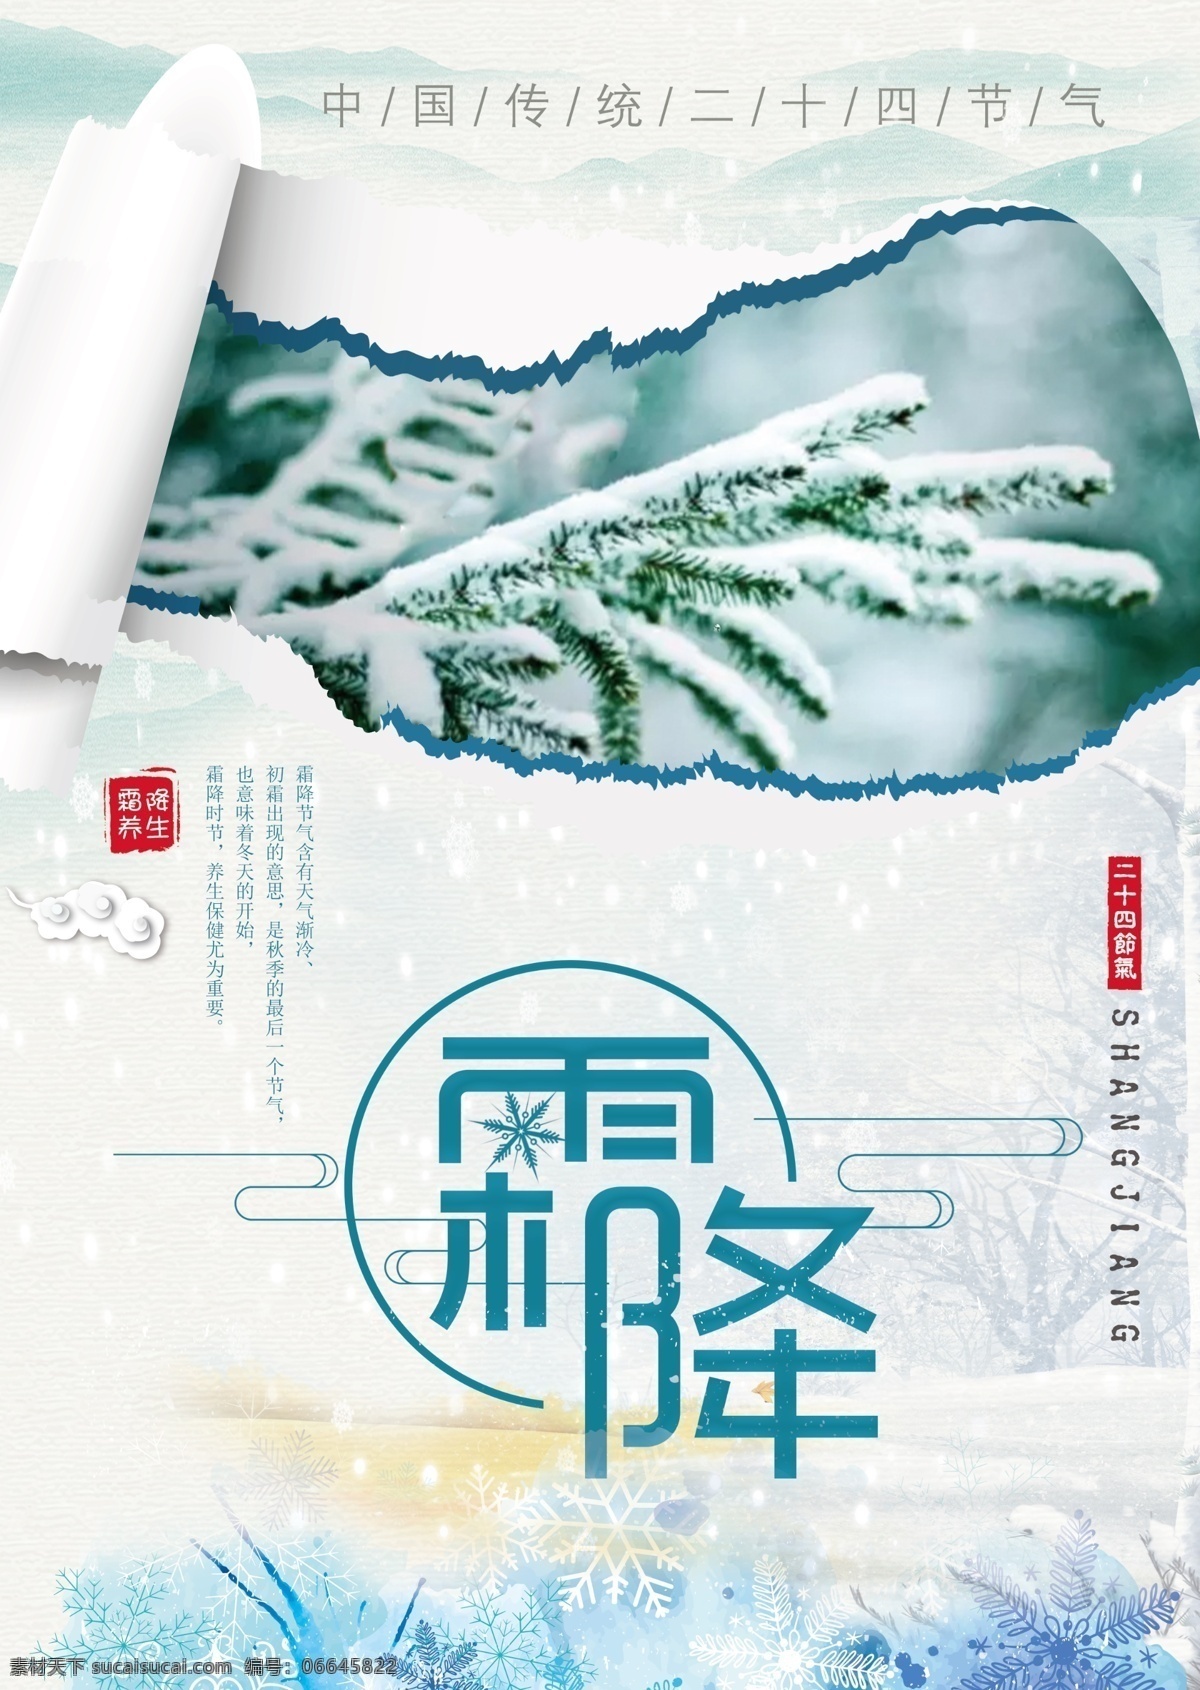 中国 传统 二十四节气 霜降 海报 节日 简约 中国风 复古 传统节日 流连 流连印象 水墨 免费模版